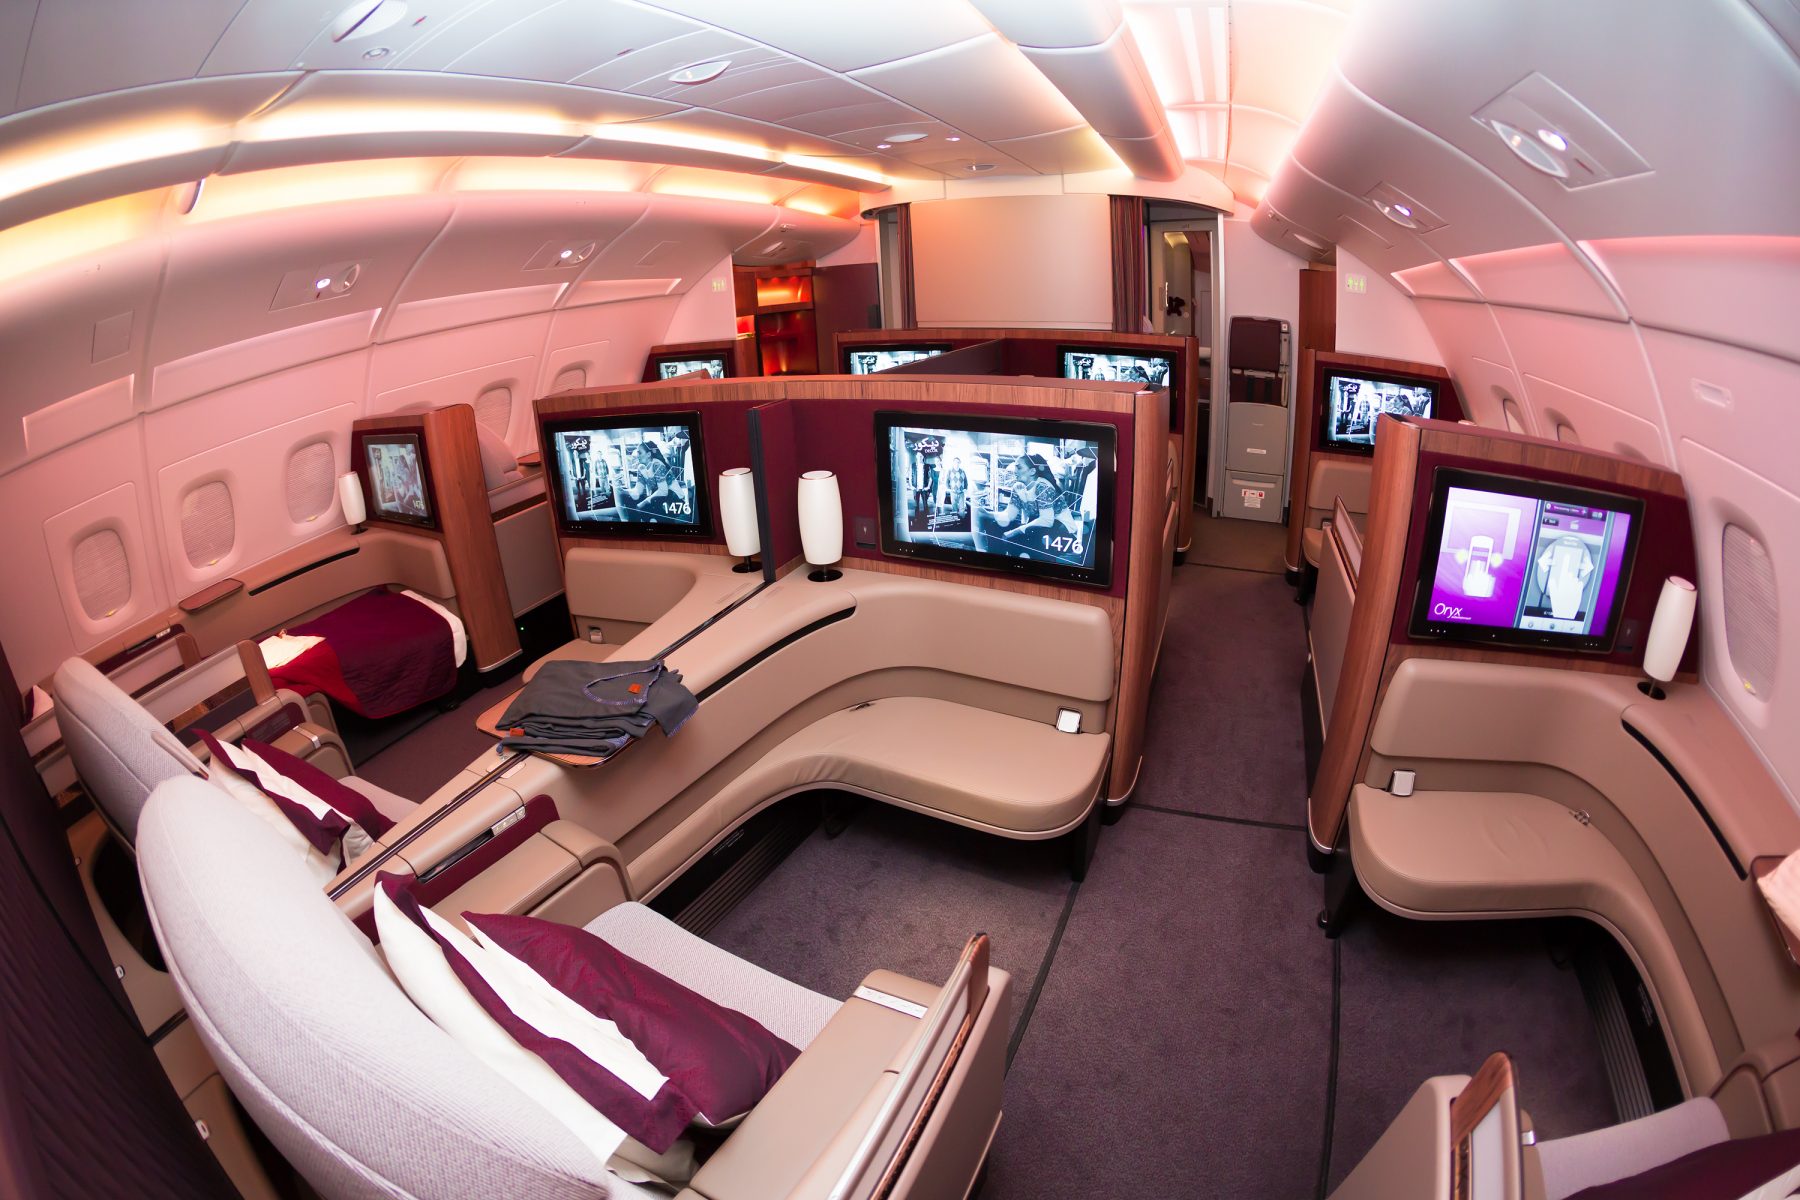 First class купить. Аэробус а380 Qatar. Airbus a380 Qatar Airways салон. Qatar Airways 1 класс. Airbus a380 first class.